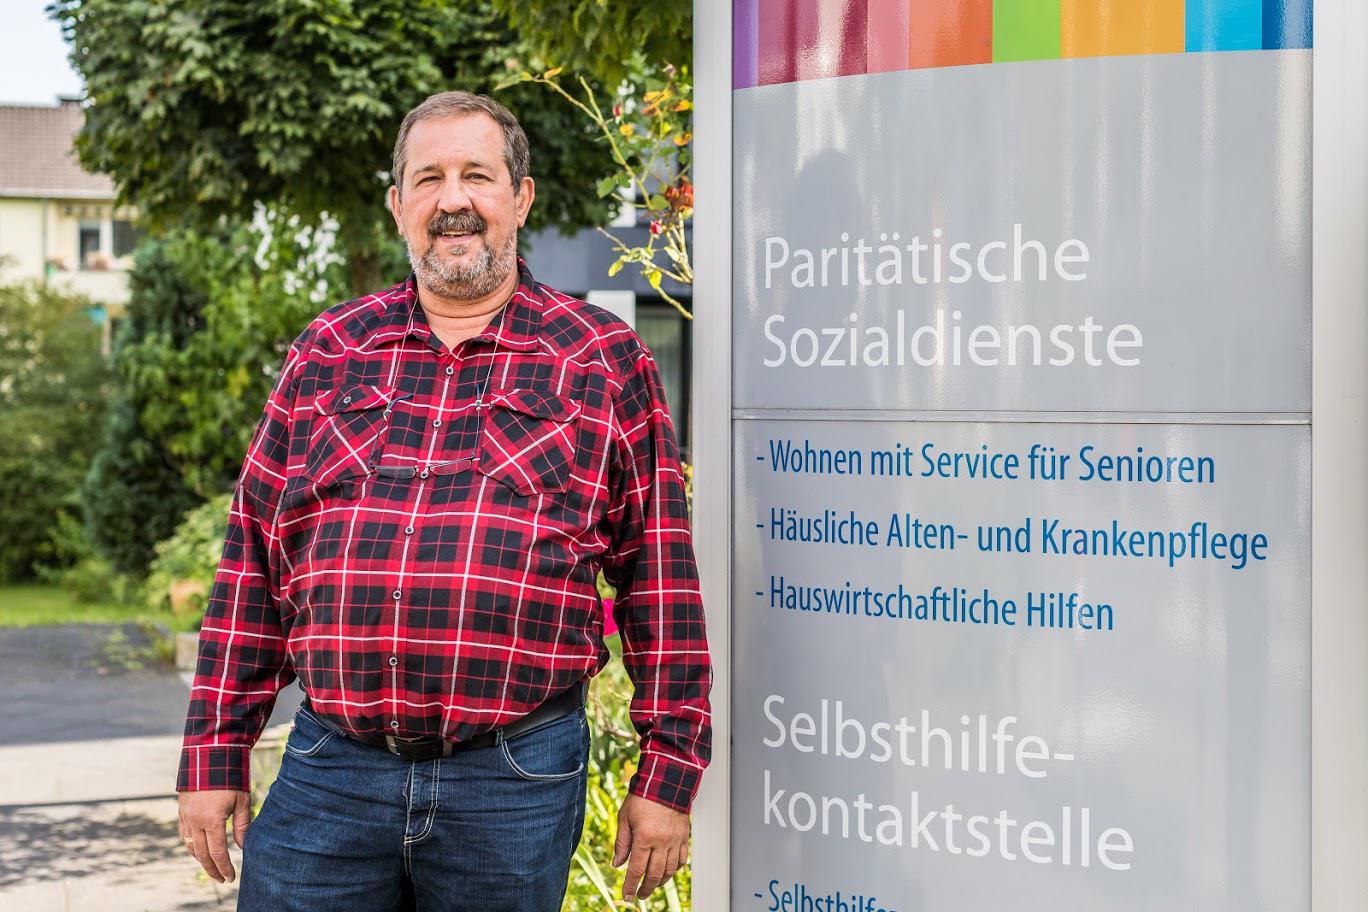 Paritätische Sozialdienste gemeinnützige GmbH, Lotharstraße 84-86 in Bonn